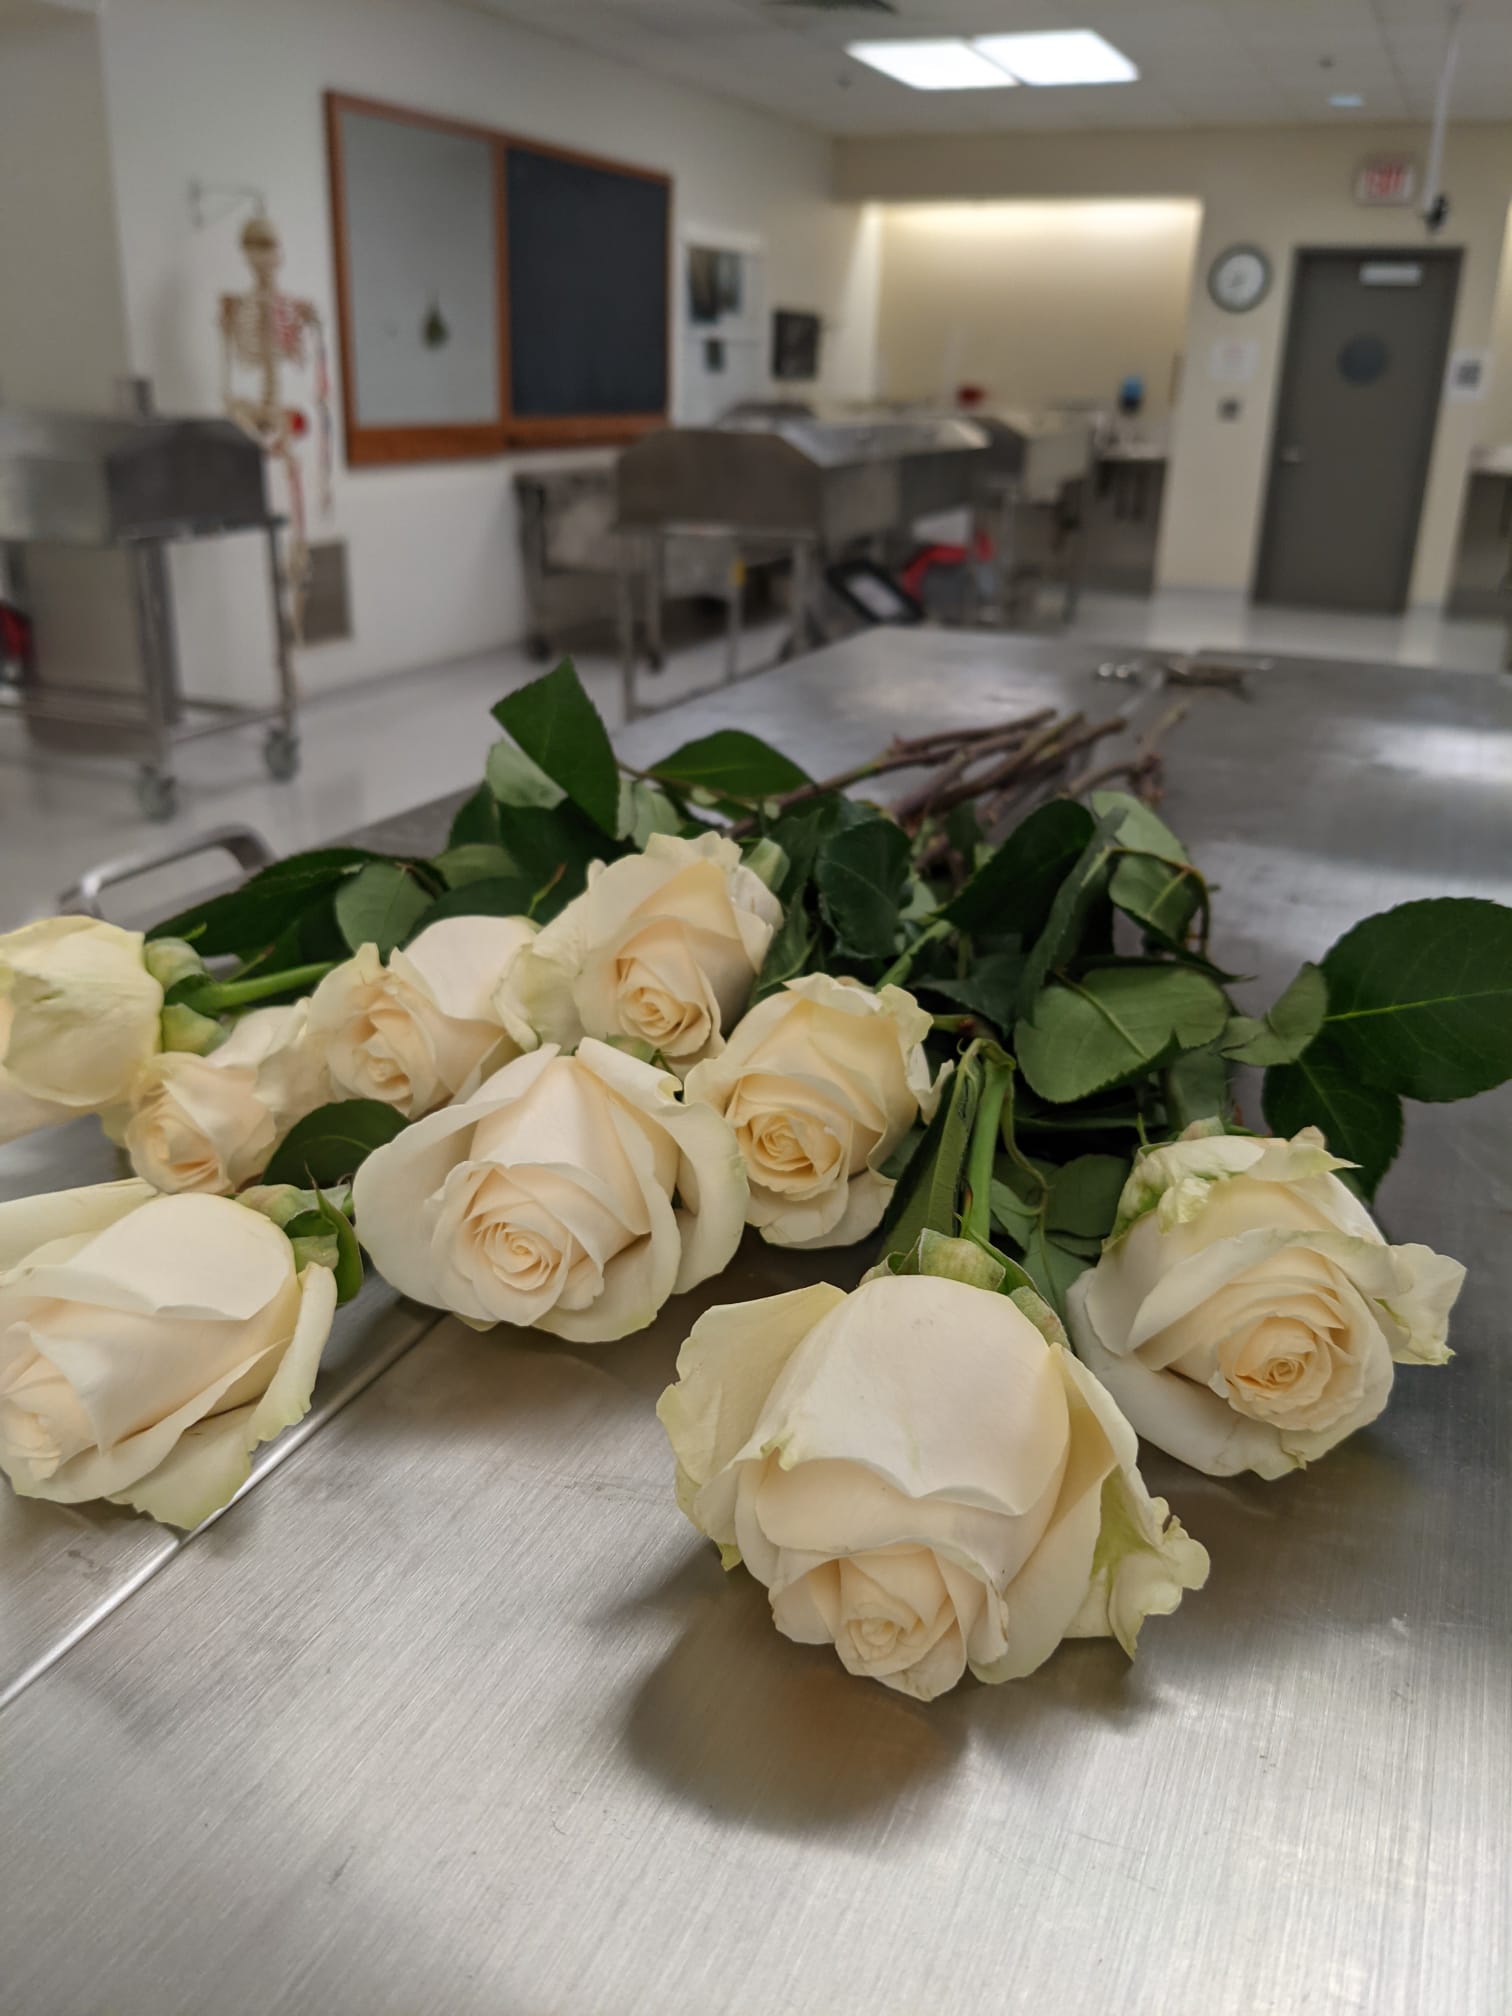 White roses laid on cadaver bay